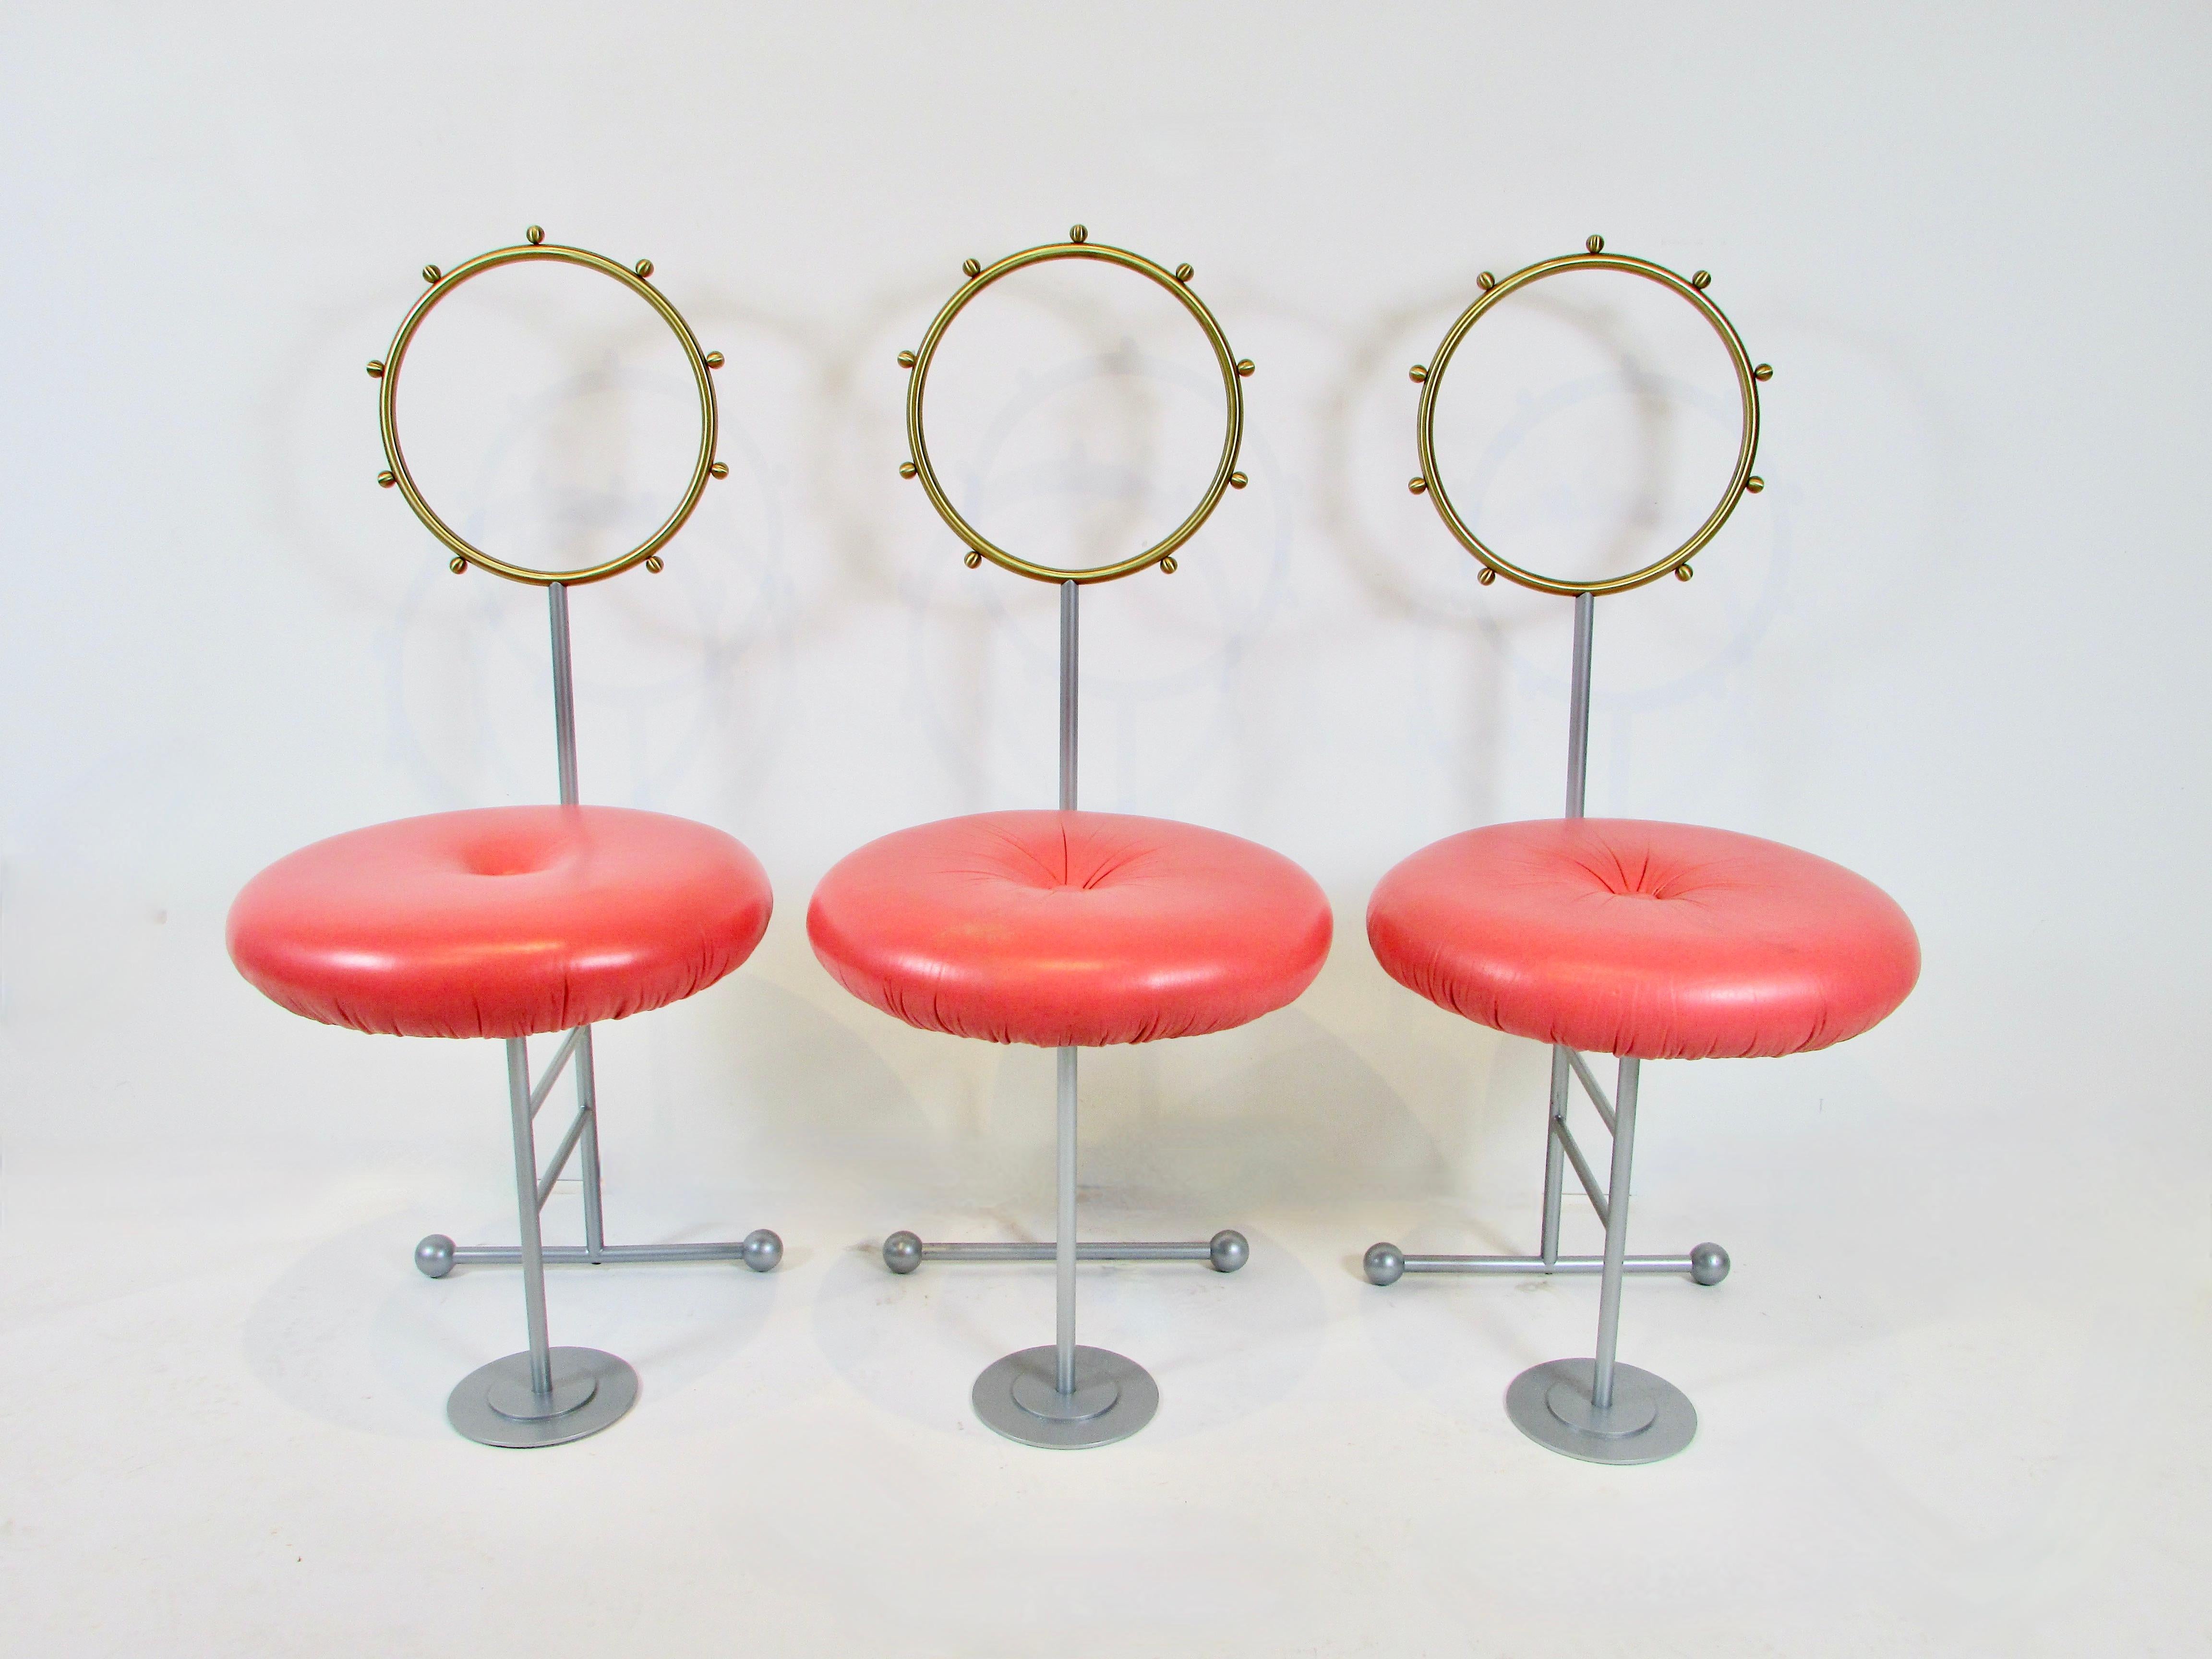  Trois chaises d'appoint post-modernes amusantes et fantaisistes conçues par Luigi Serafini pour Sawaya et Moroni Milan Italie.  Les chaises post-modernes de style Memphis me font toujours sourire. Le dossier circulaire a un diamètre de 11,5